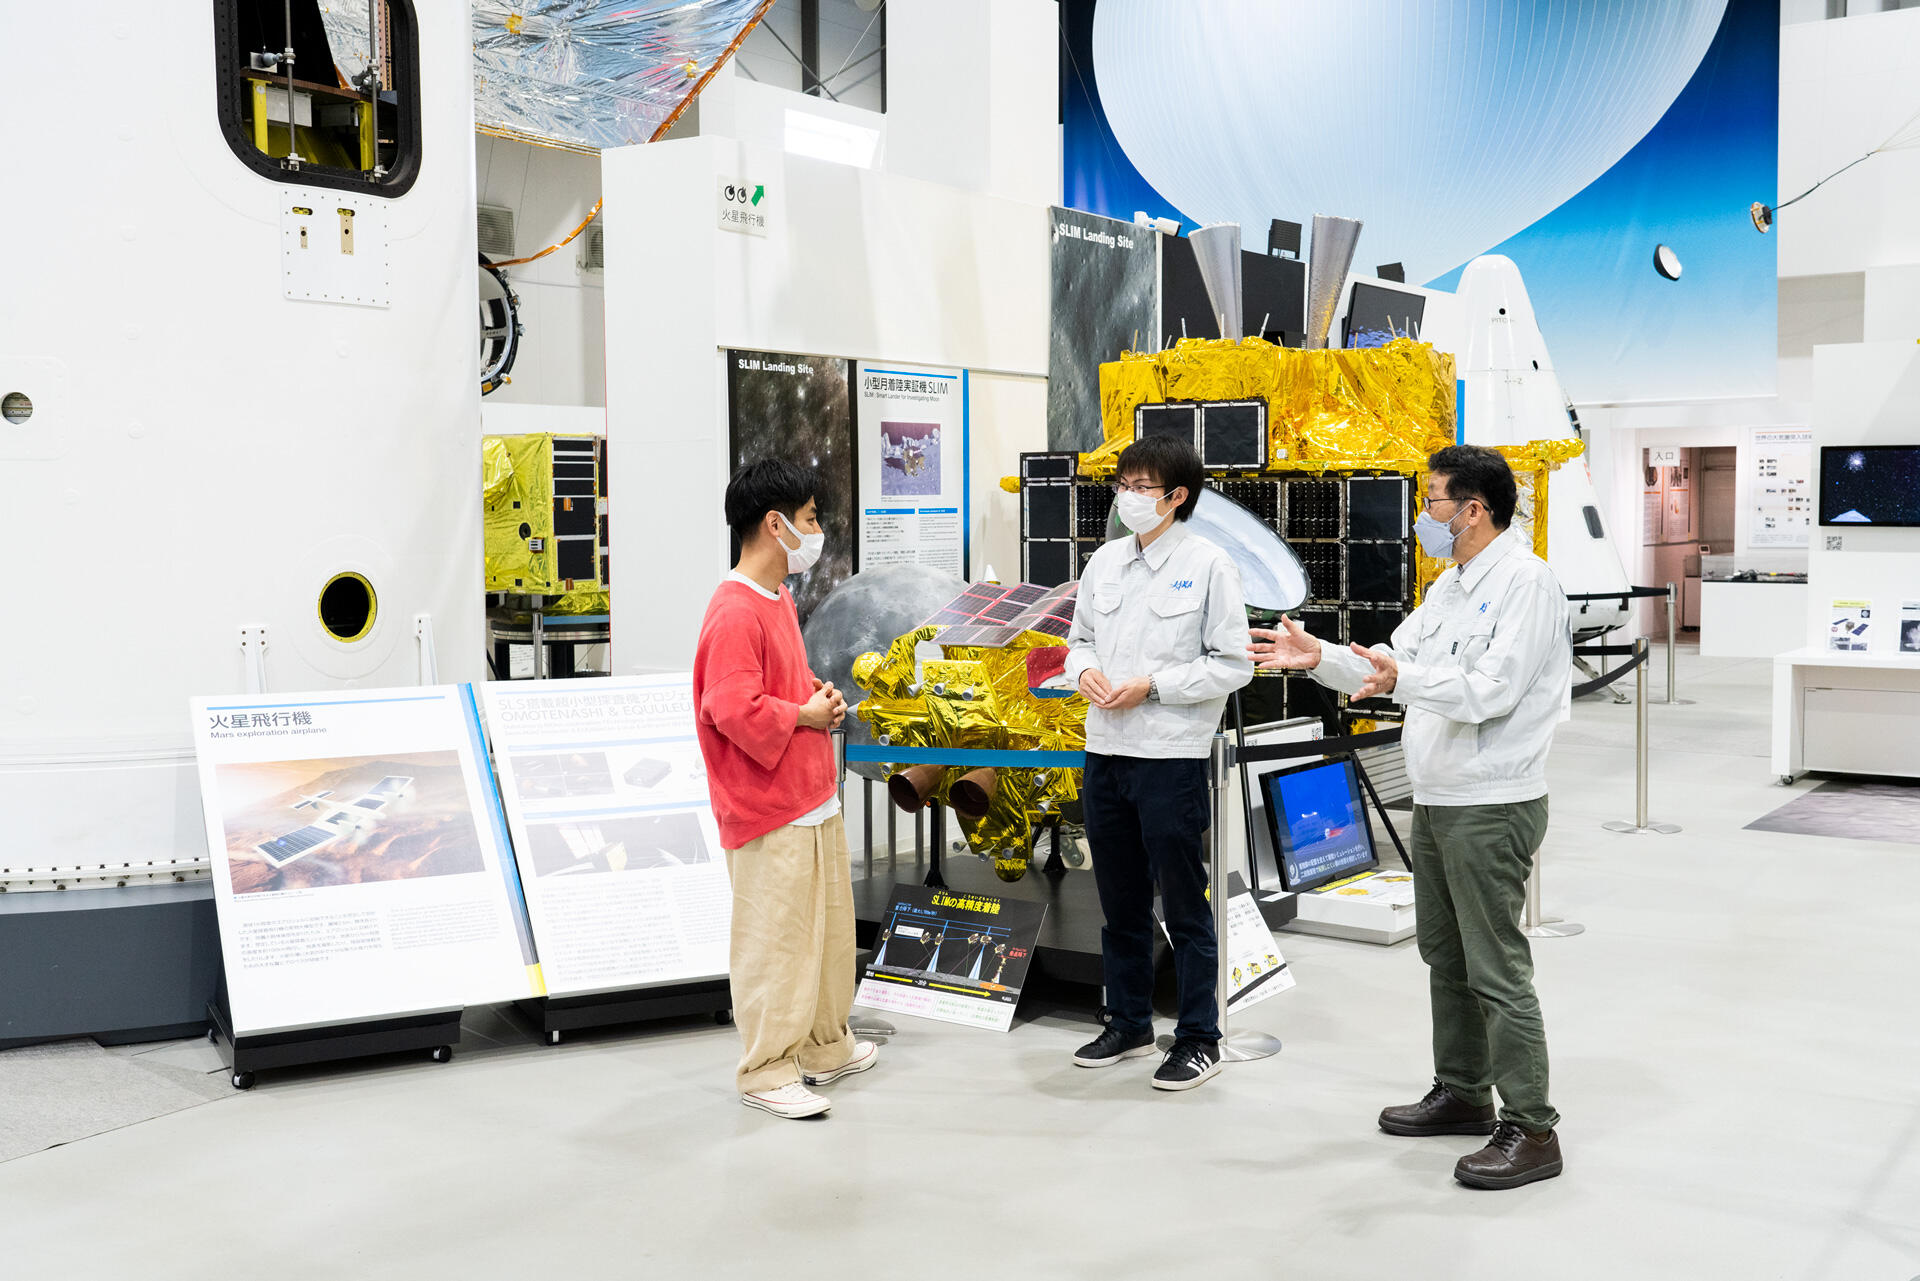 相模原キャンパスの「宇宙科学探査交流棟」。展示や模型などを通して宇宙科学や探査の歴史や技術について学べる。月探査にまつわる展示物も充実している。